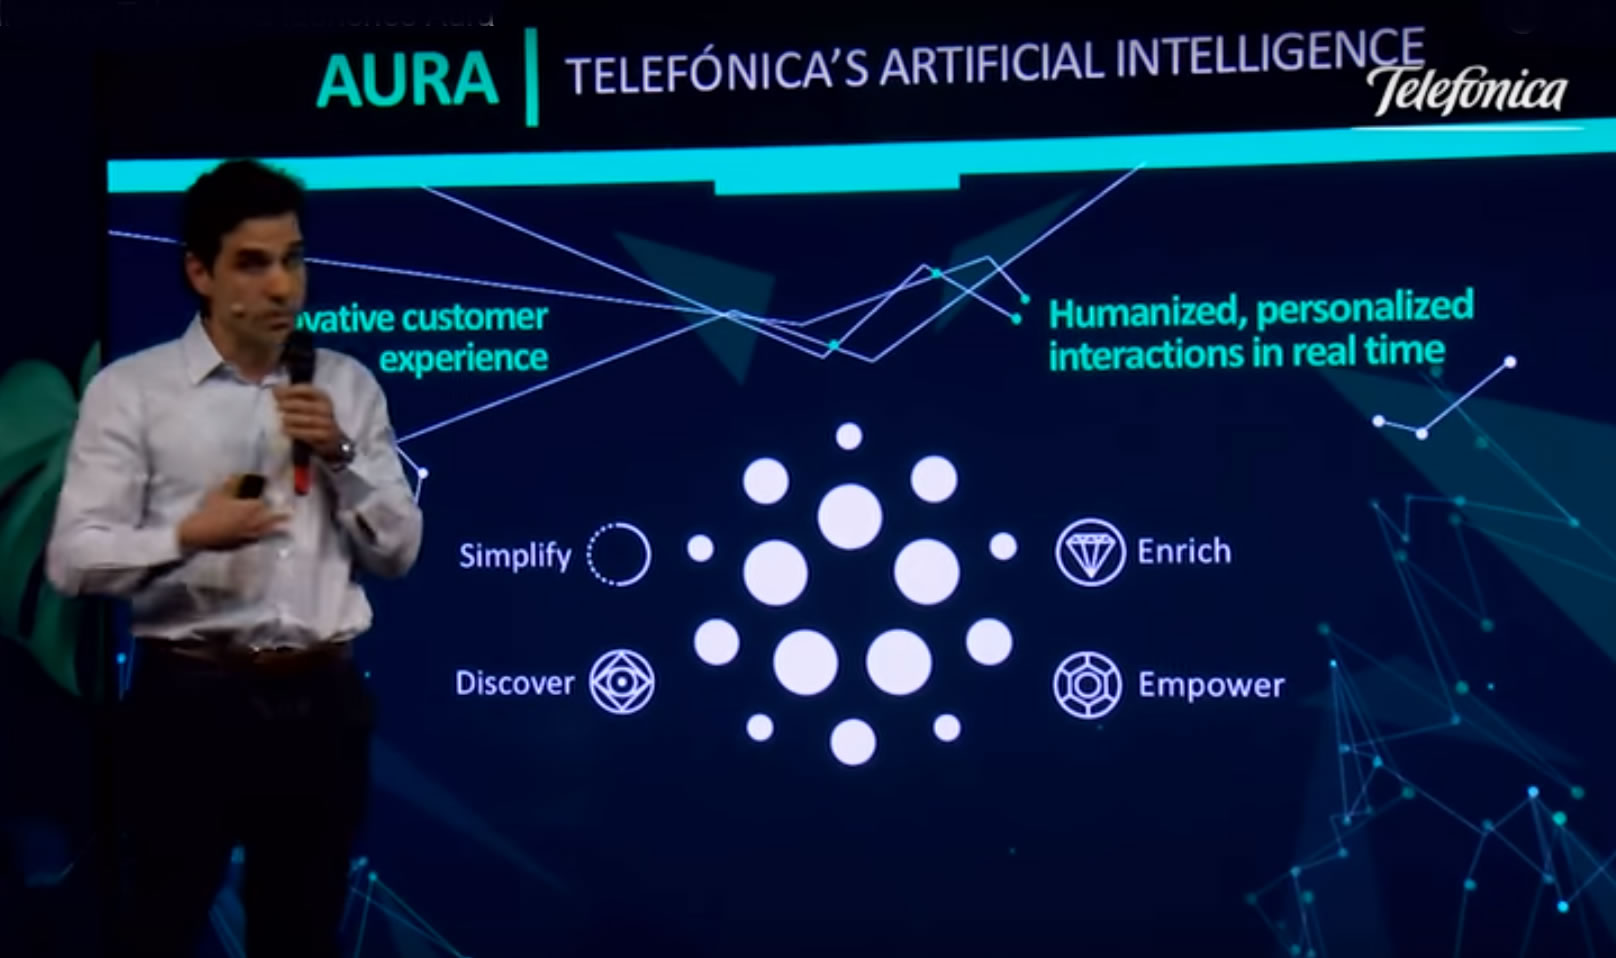 Telefónica lanza Aura (Inteligencia Artificial) en Argentina, Brasil, Chile, Alemania, España y Reino Unido #MWC2018 1